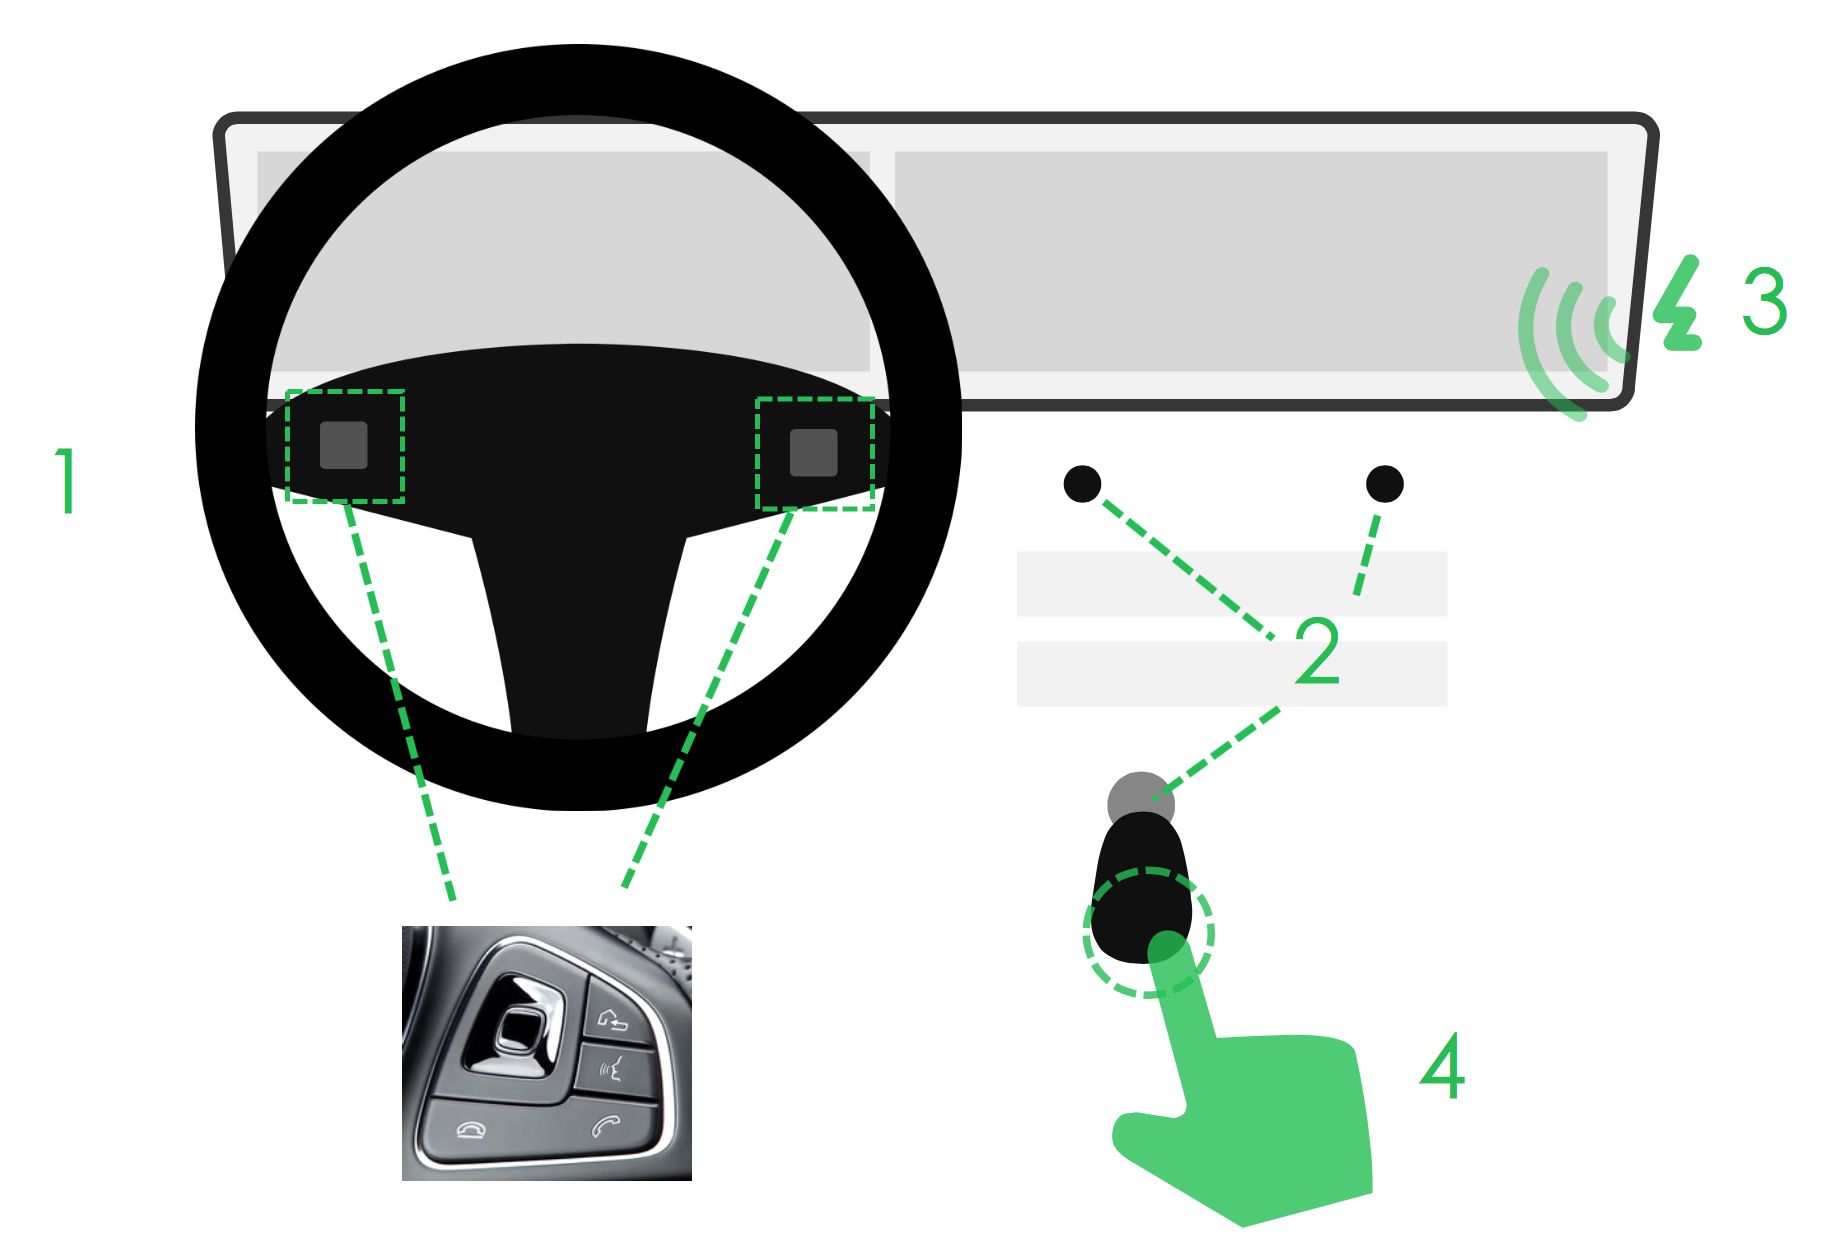 车载HMI - 汽车仪表盘交互体验设计分析（一） - 图44